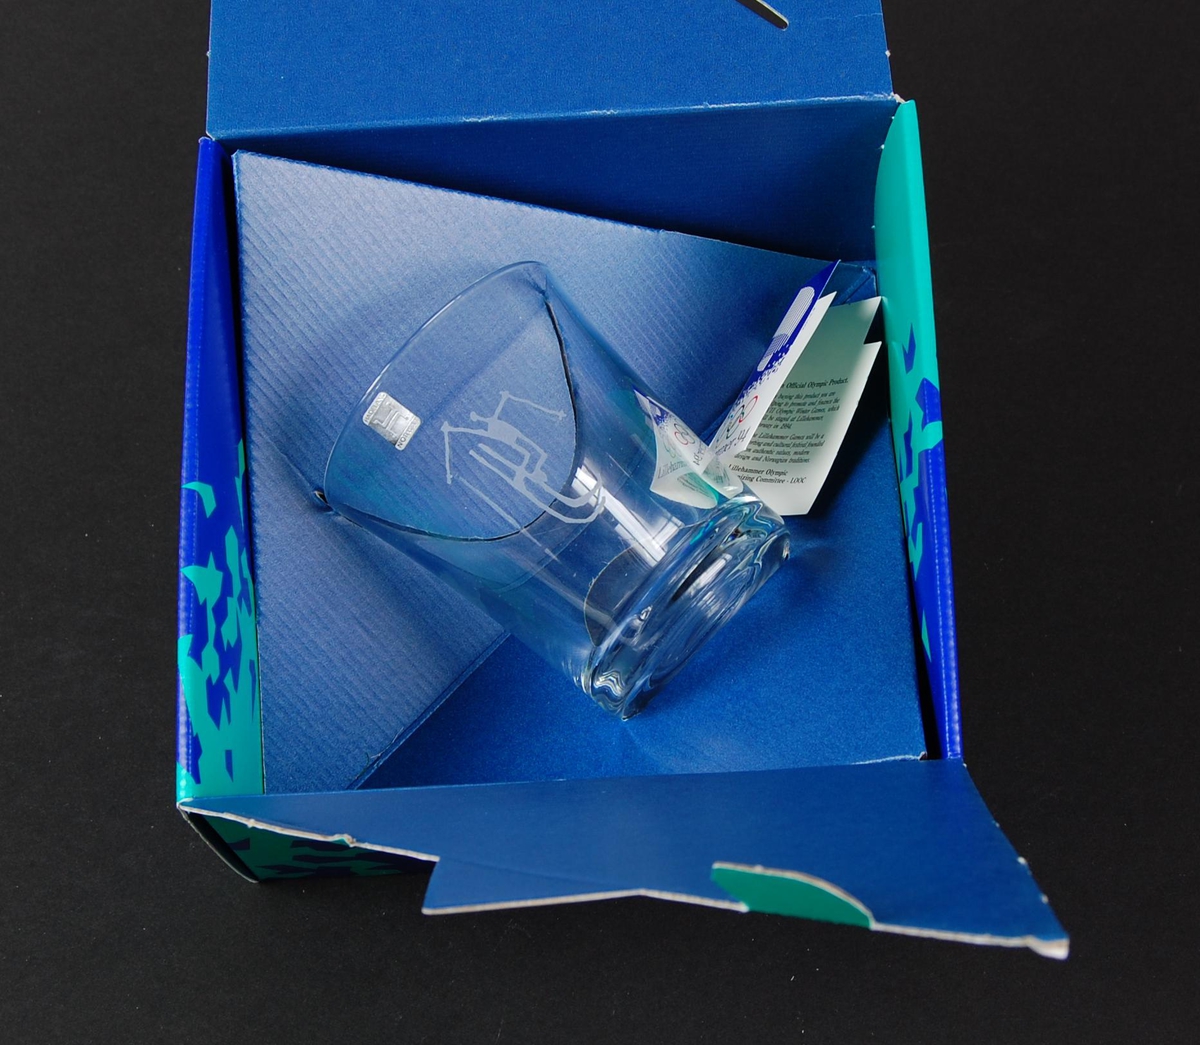 Whiskyglass med piktogram for sportsgrenen freestyle, kulekjøring. Glasset ligger i en blå og grønn pappeske med krystallmønster. Krystallmønsteret inngikk i LOOCs designprogram. På esken er det også en logo for de olympiske vinterleker på Lillehammer i 1994. 